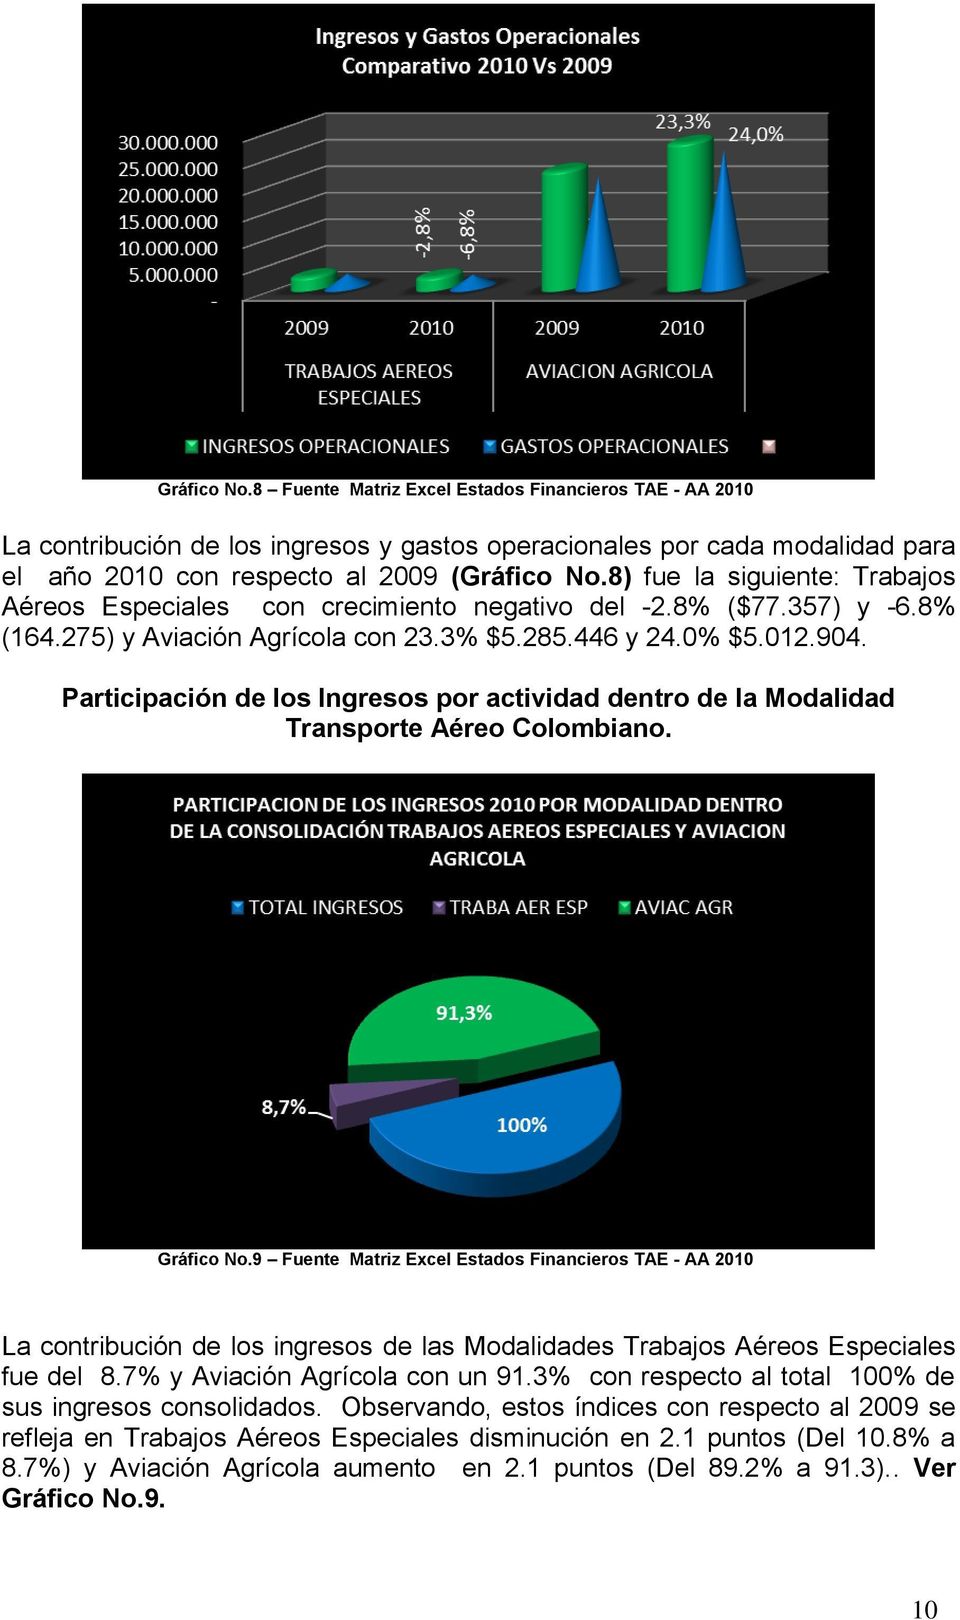 Participación de los Ingresos por actividad dentro de la Modalidad Transporte Aéreo Colombiano. Gráfico No.